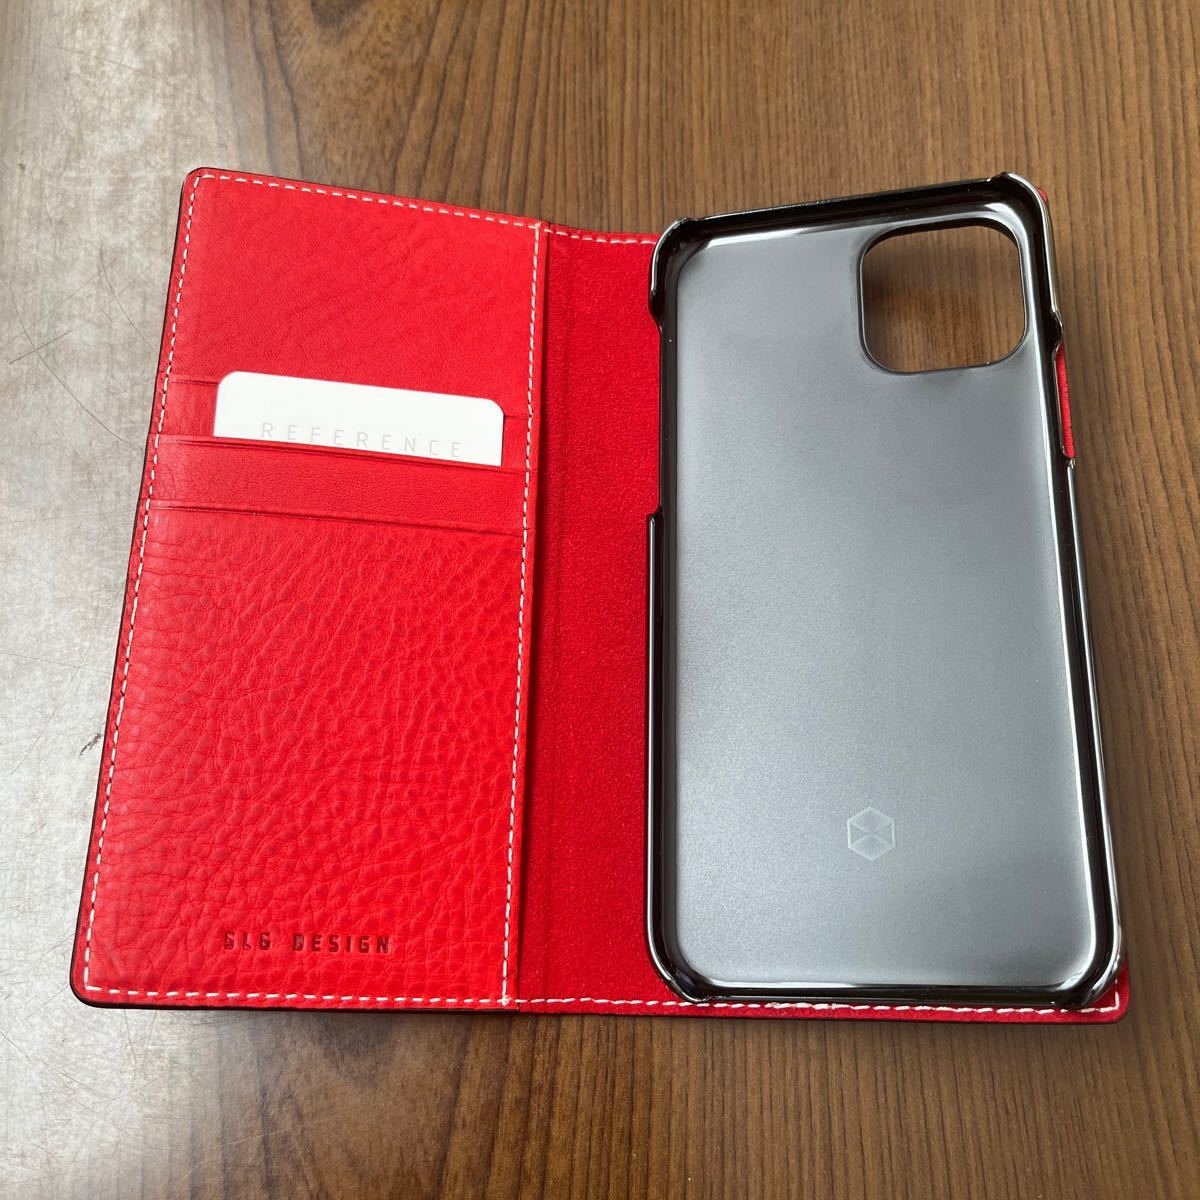 602p0939☆ SLG DESIGN iPhone 11 Pro ケース 手帳型 イタリアン本革 Minerva Box Leather Case レッド (ミネルバボックスレザーケース) 